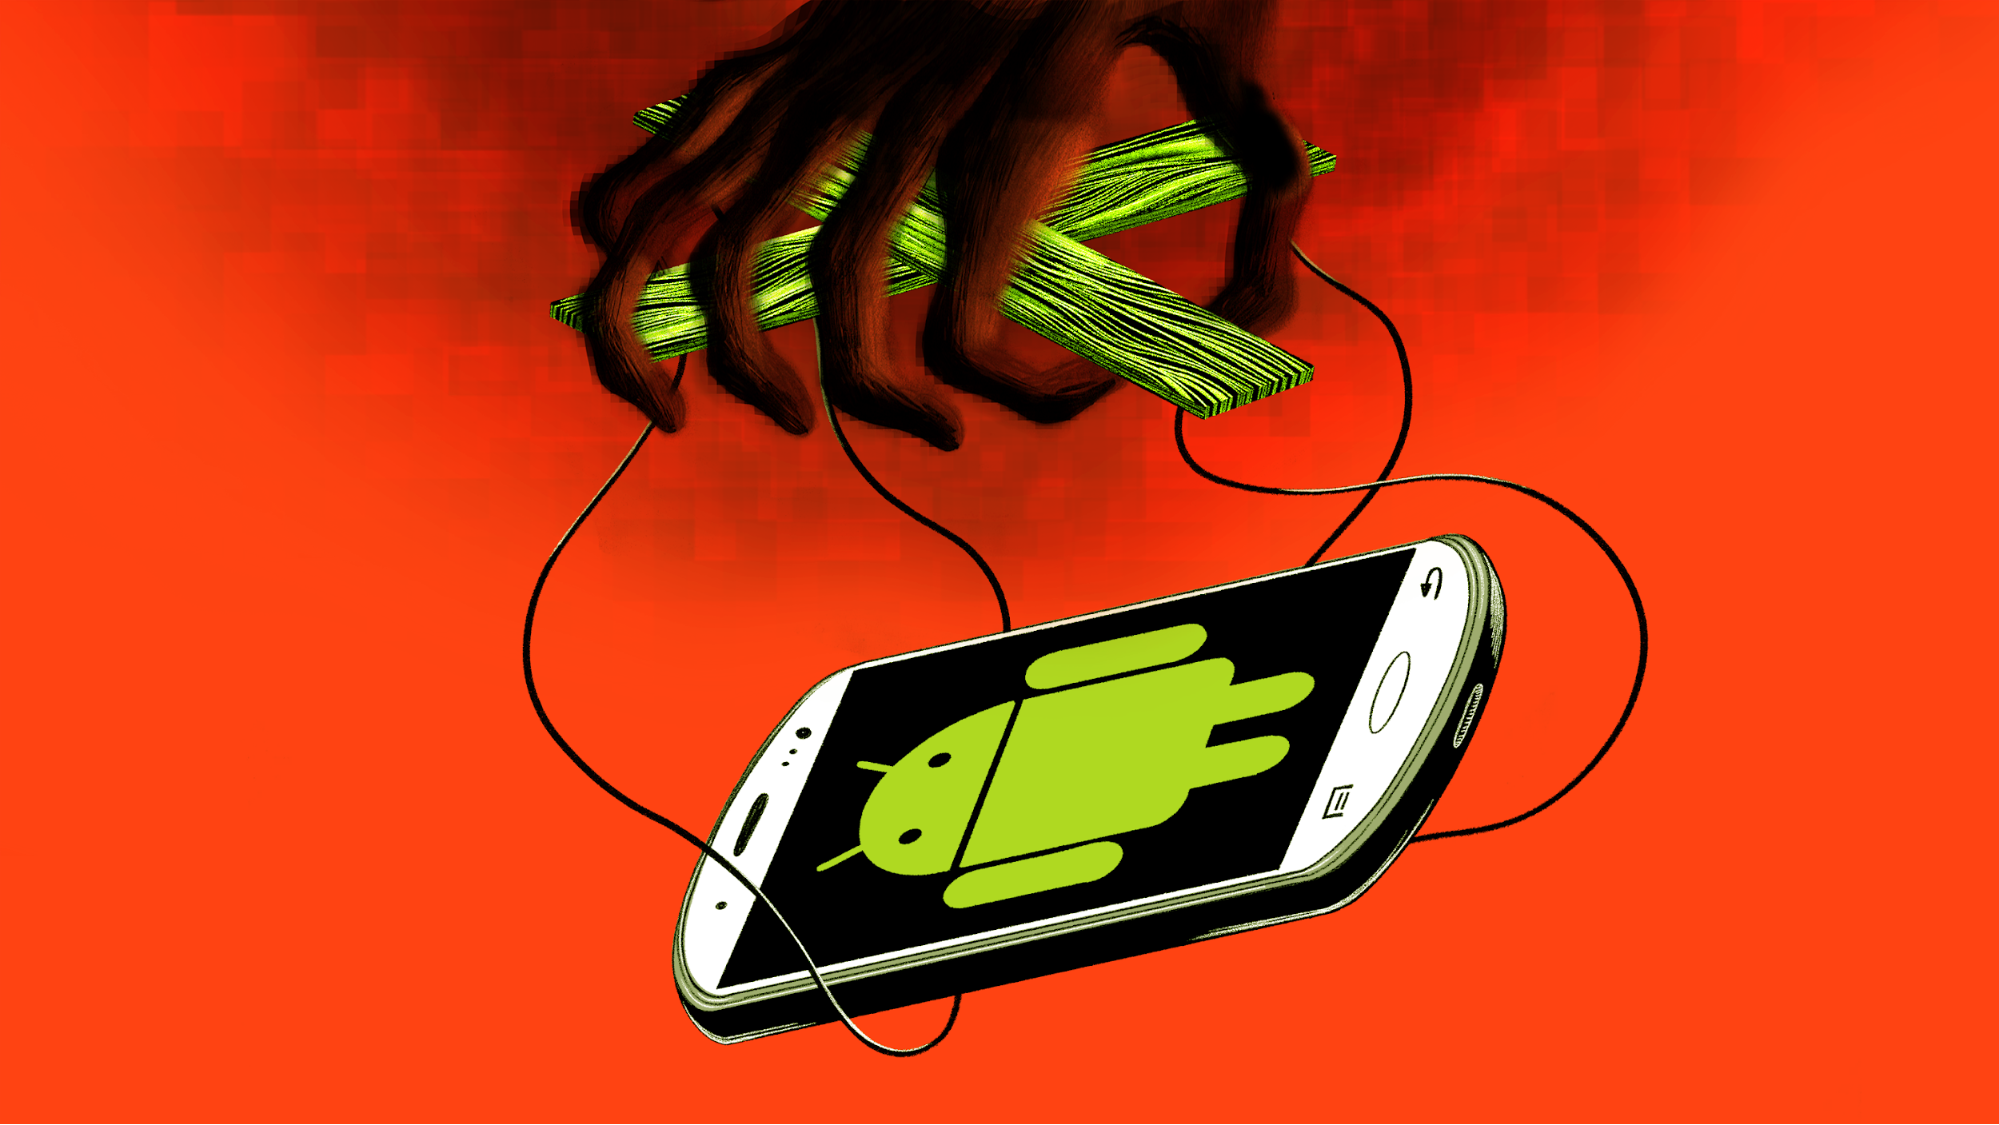 Как удалить вирус с андроида (android) на телефоне: инструкция 2019 года